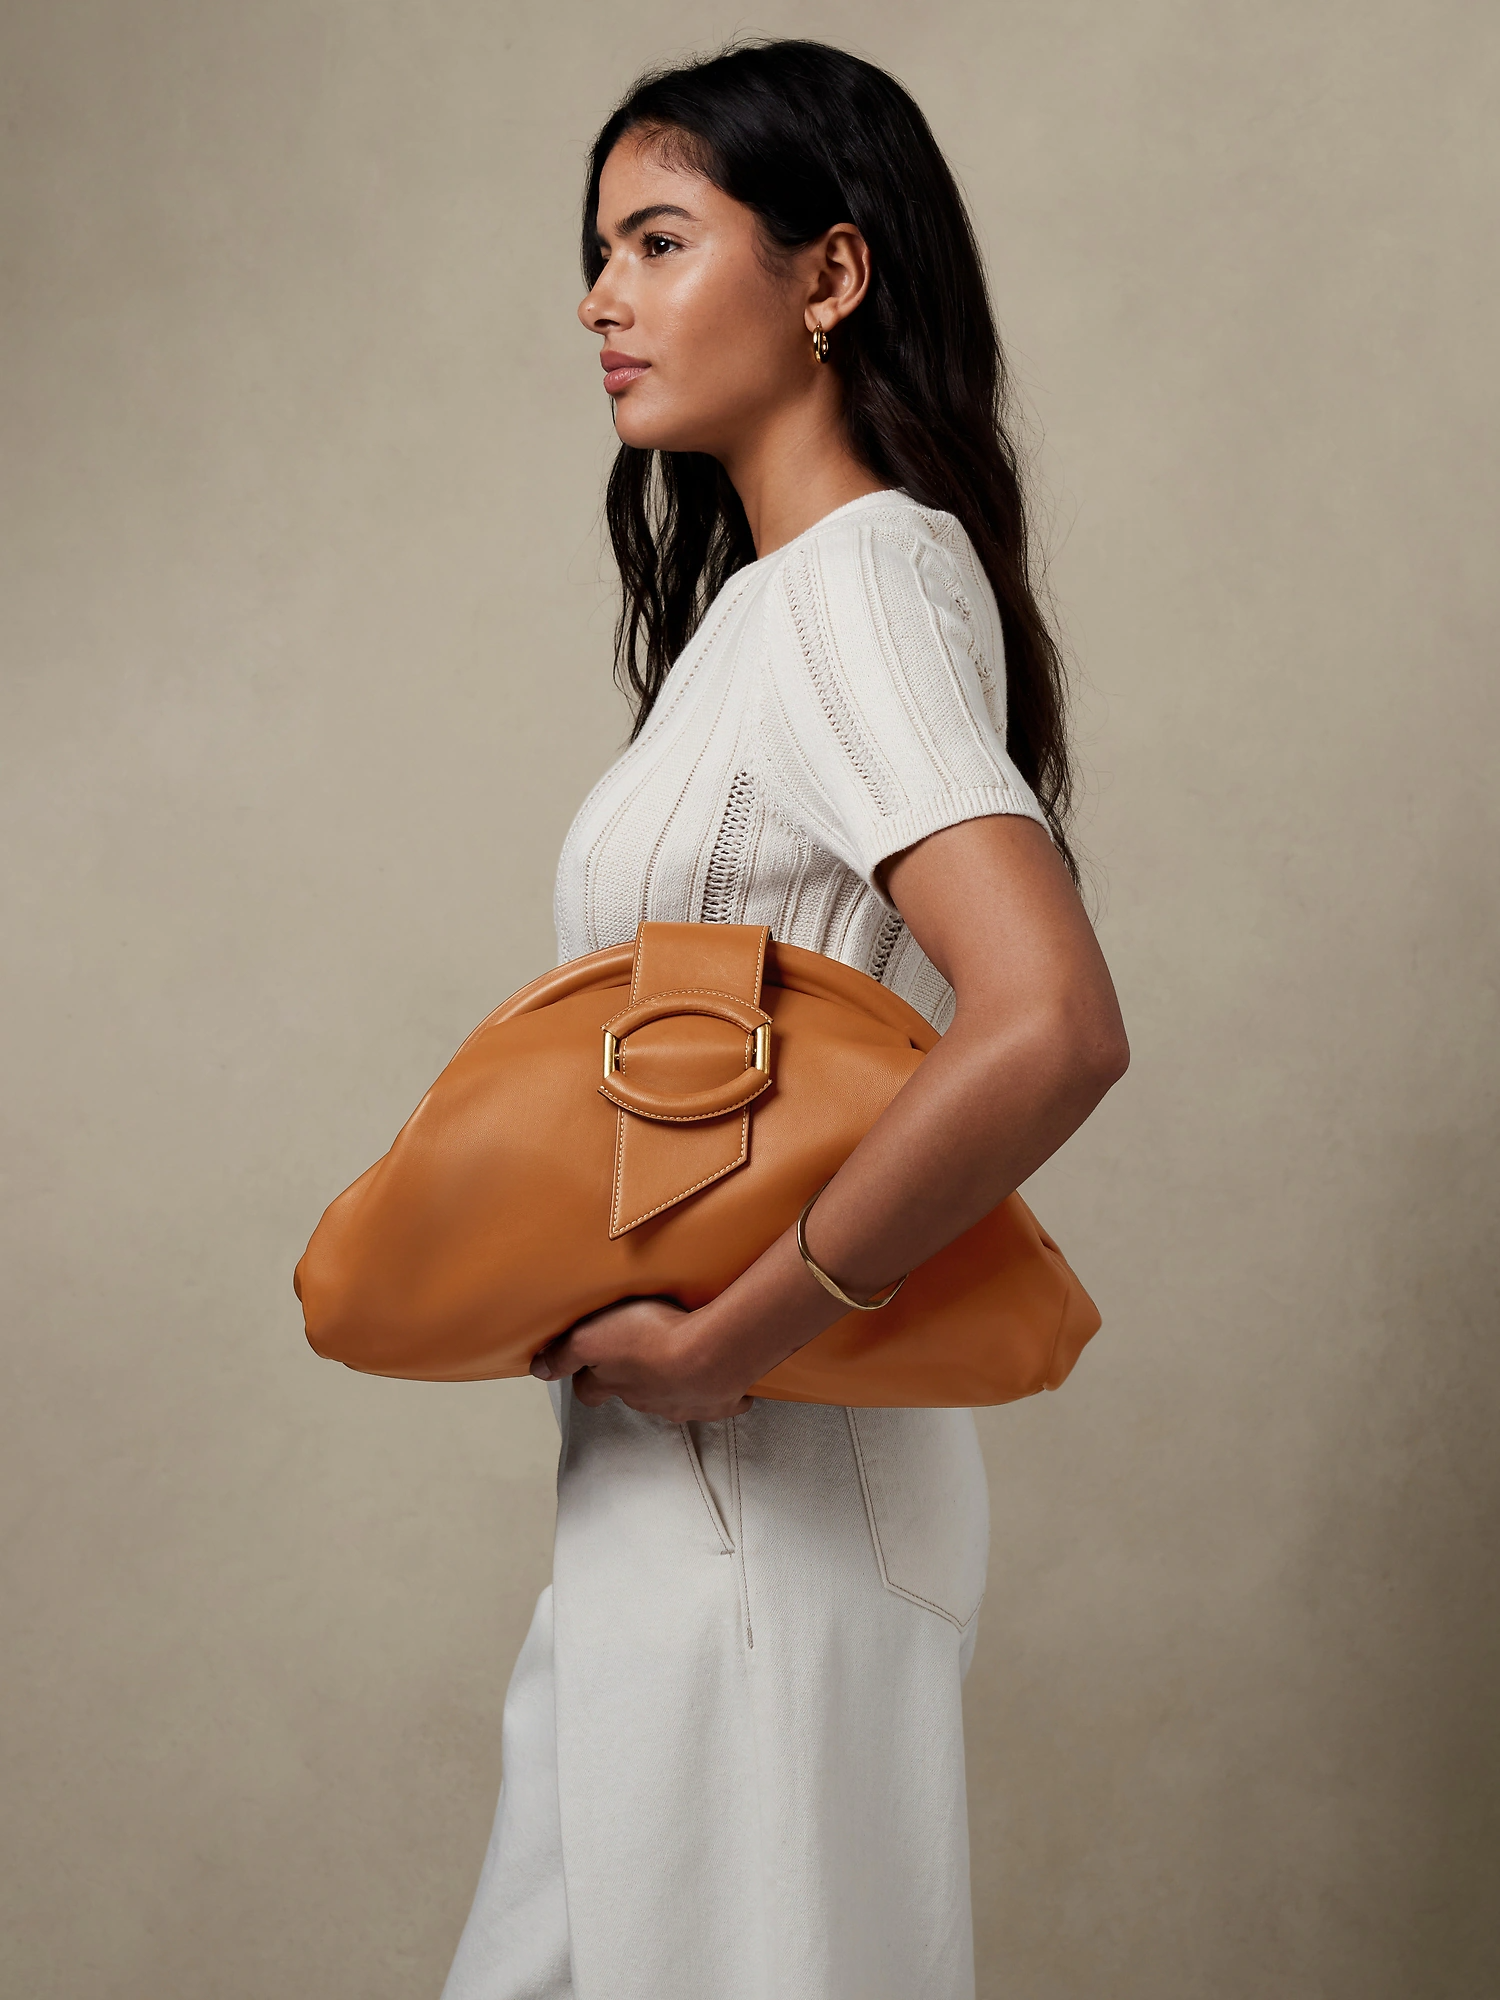 Handbags – New this Season